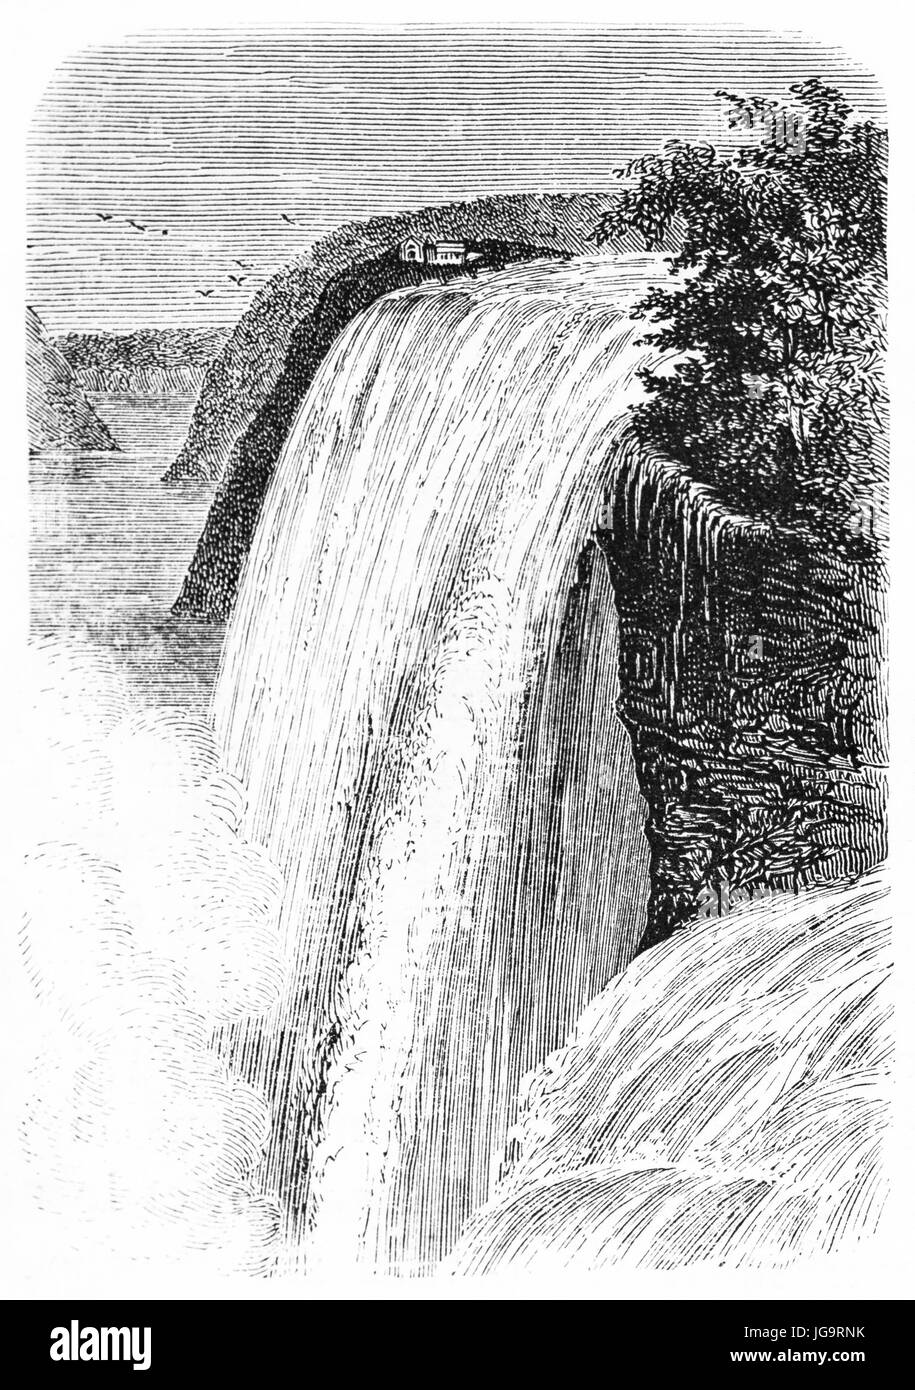 Caduta centrale delle cascate del Niagara, Nord America. Grande quantità d'acqua che cade giù selvaggiamente facendo schiuma. Antica pittura di stile di incisione a toni grigi di Huet, 1861 Foto Stock